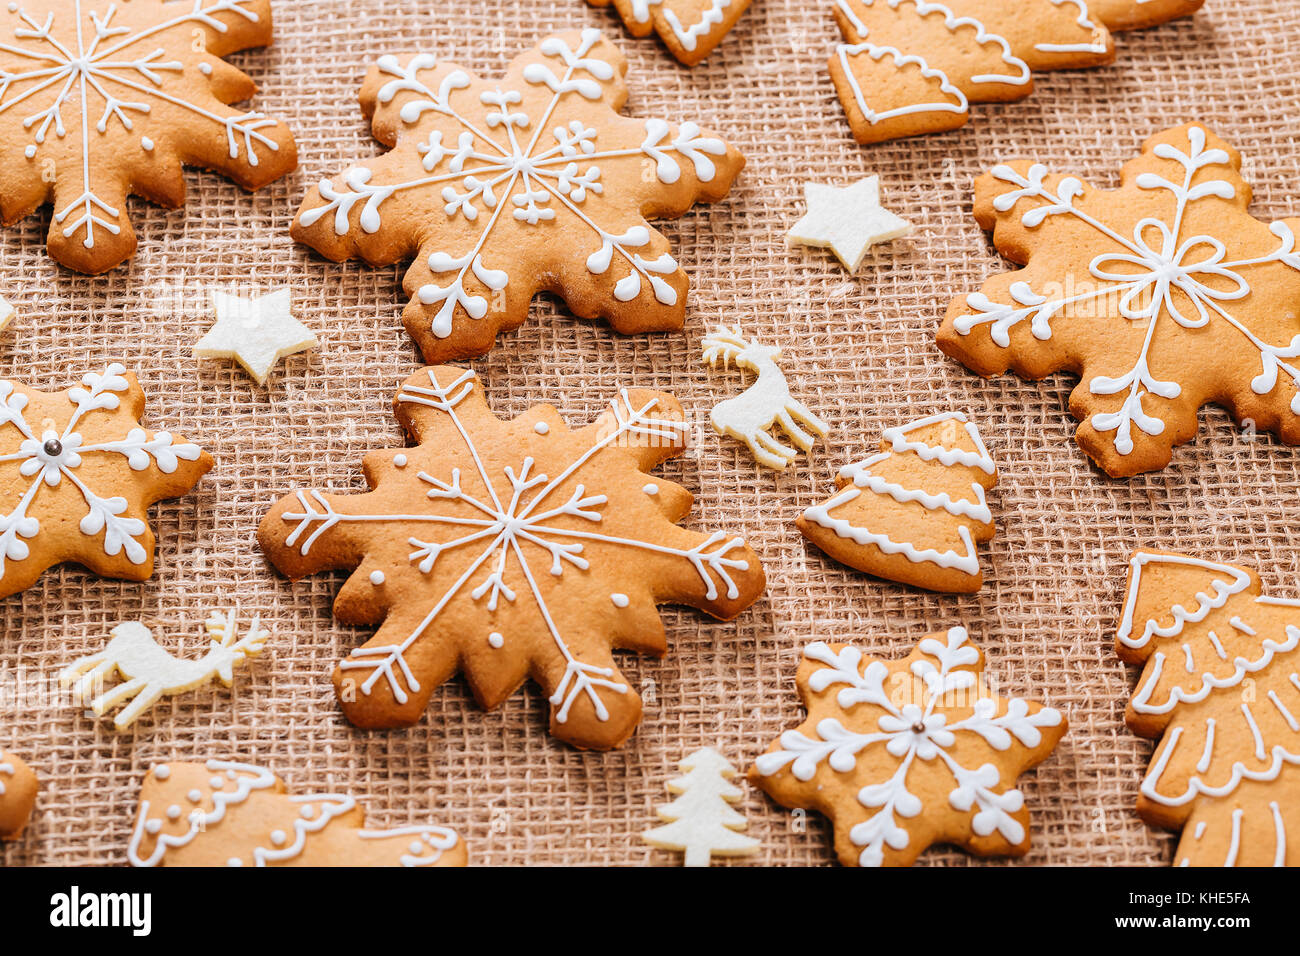 Gingerbread cookies de Noël fait maison et décoration nouvel an sur table avec nappe de toile. joyeux noël carte postale. Banque D'Images